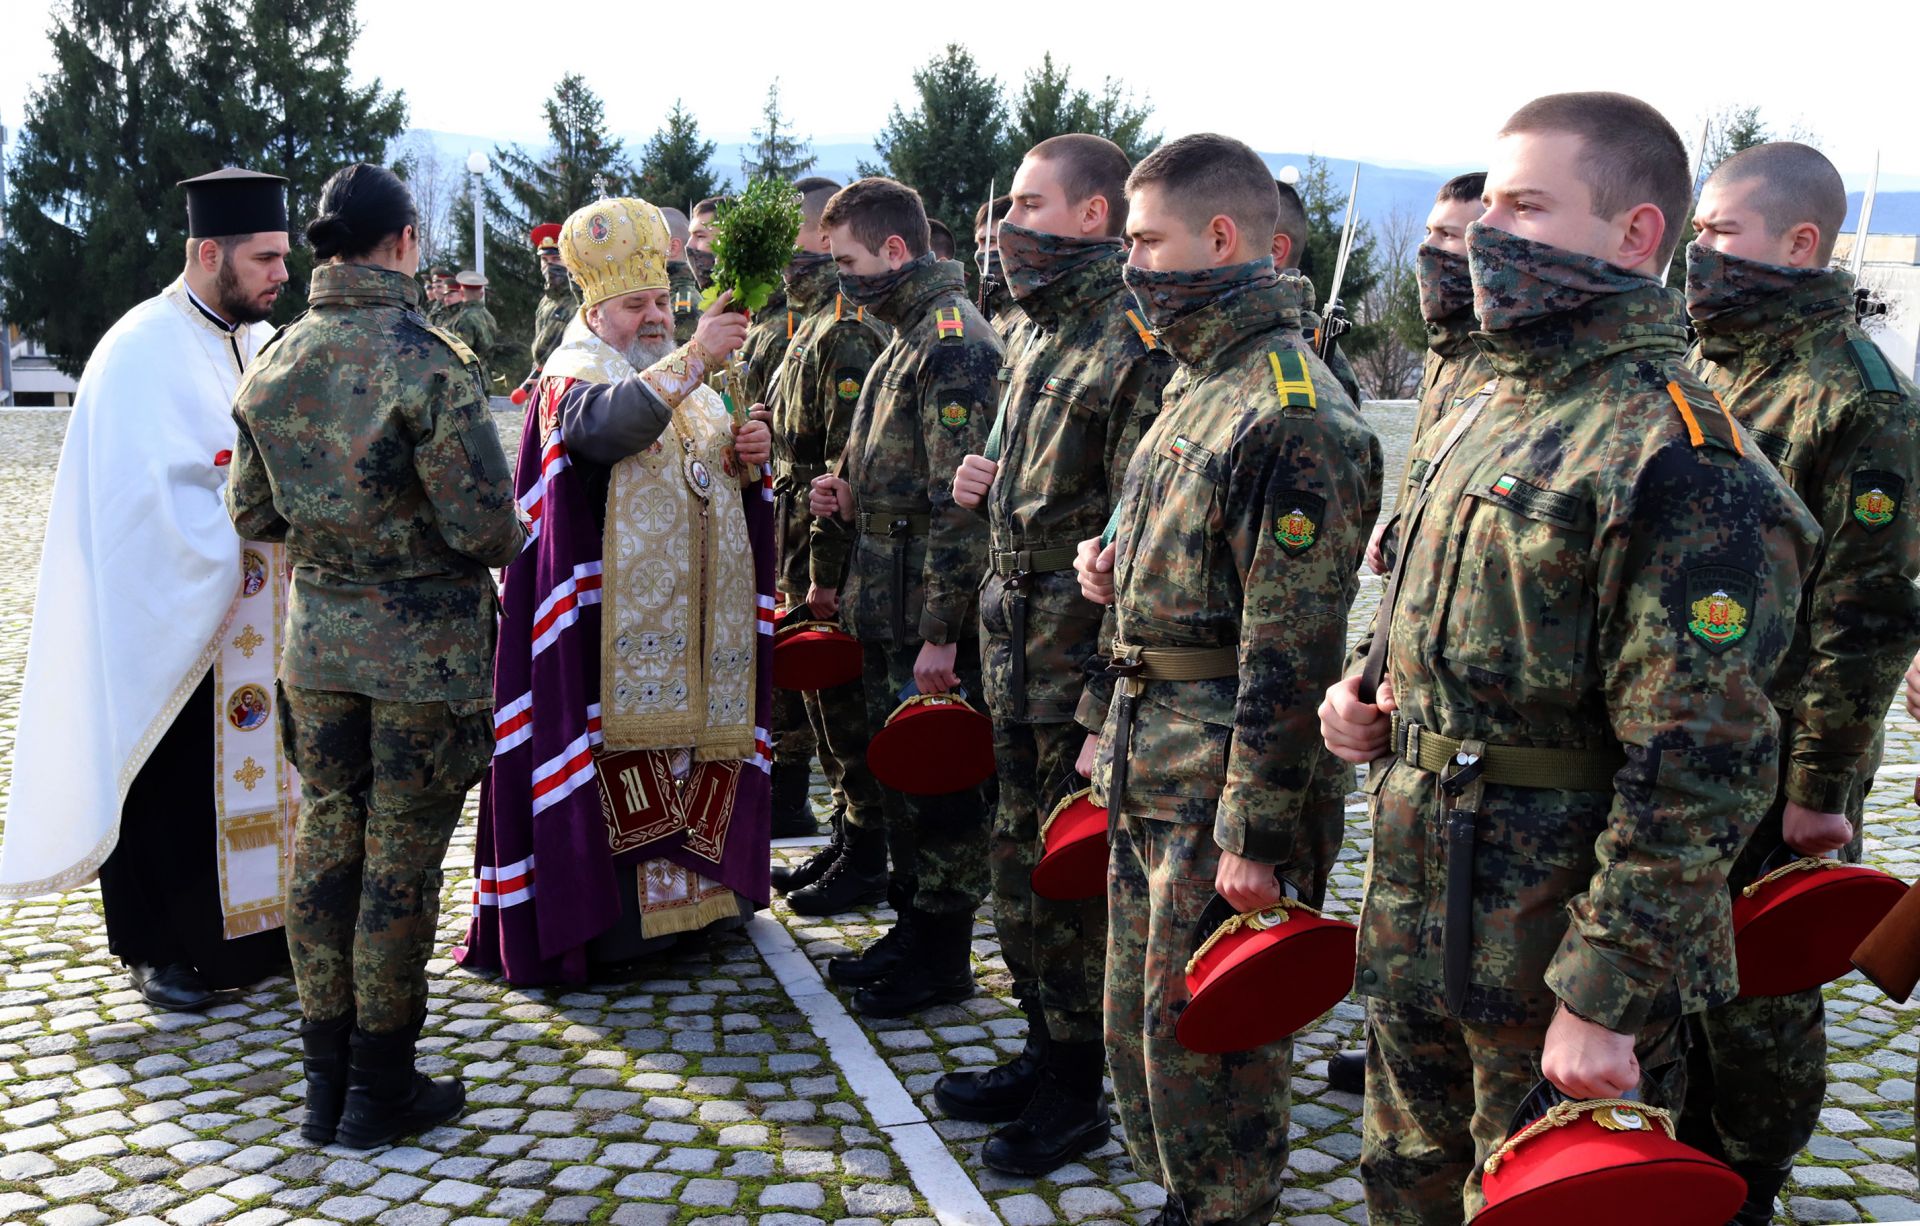 Курсанти от Националния военен университет във Велико Търново бяха благословени на днешния християнски празник Богоявление - Йордановден.